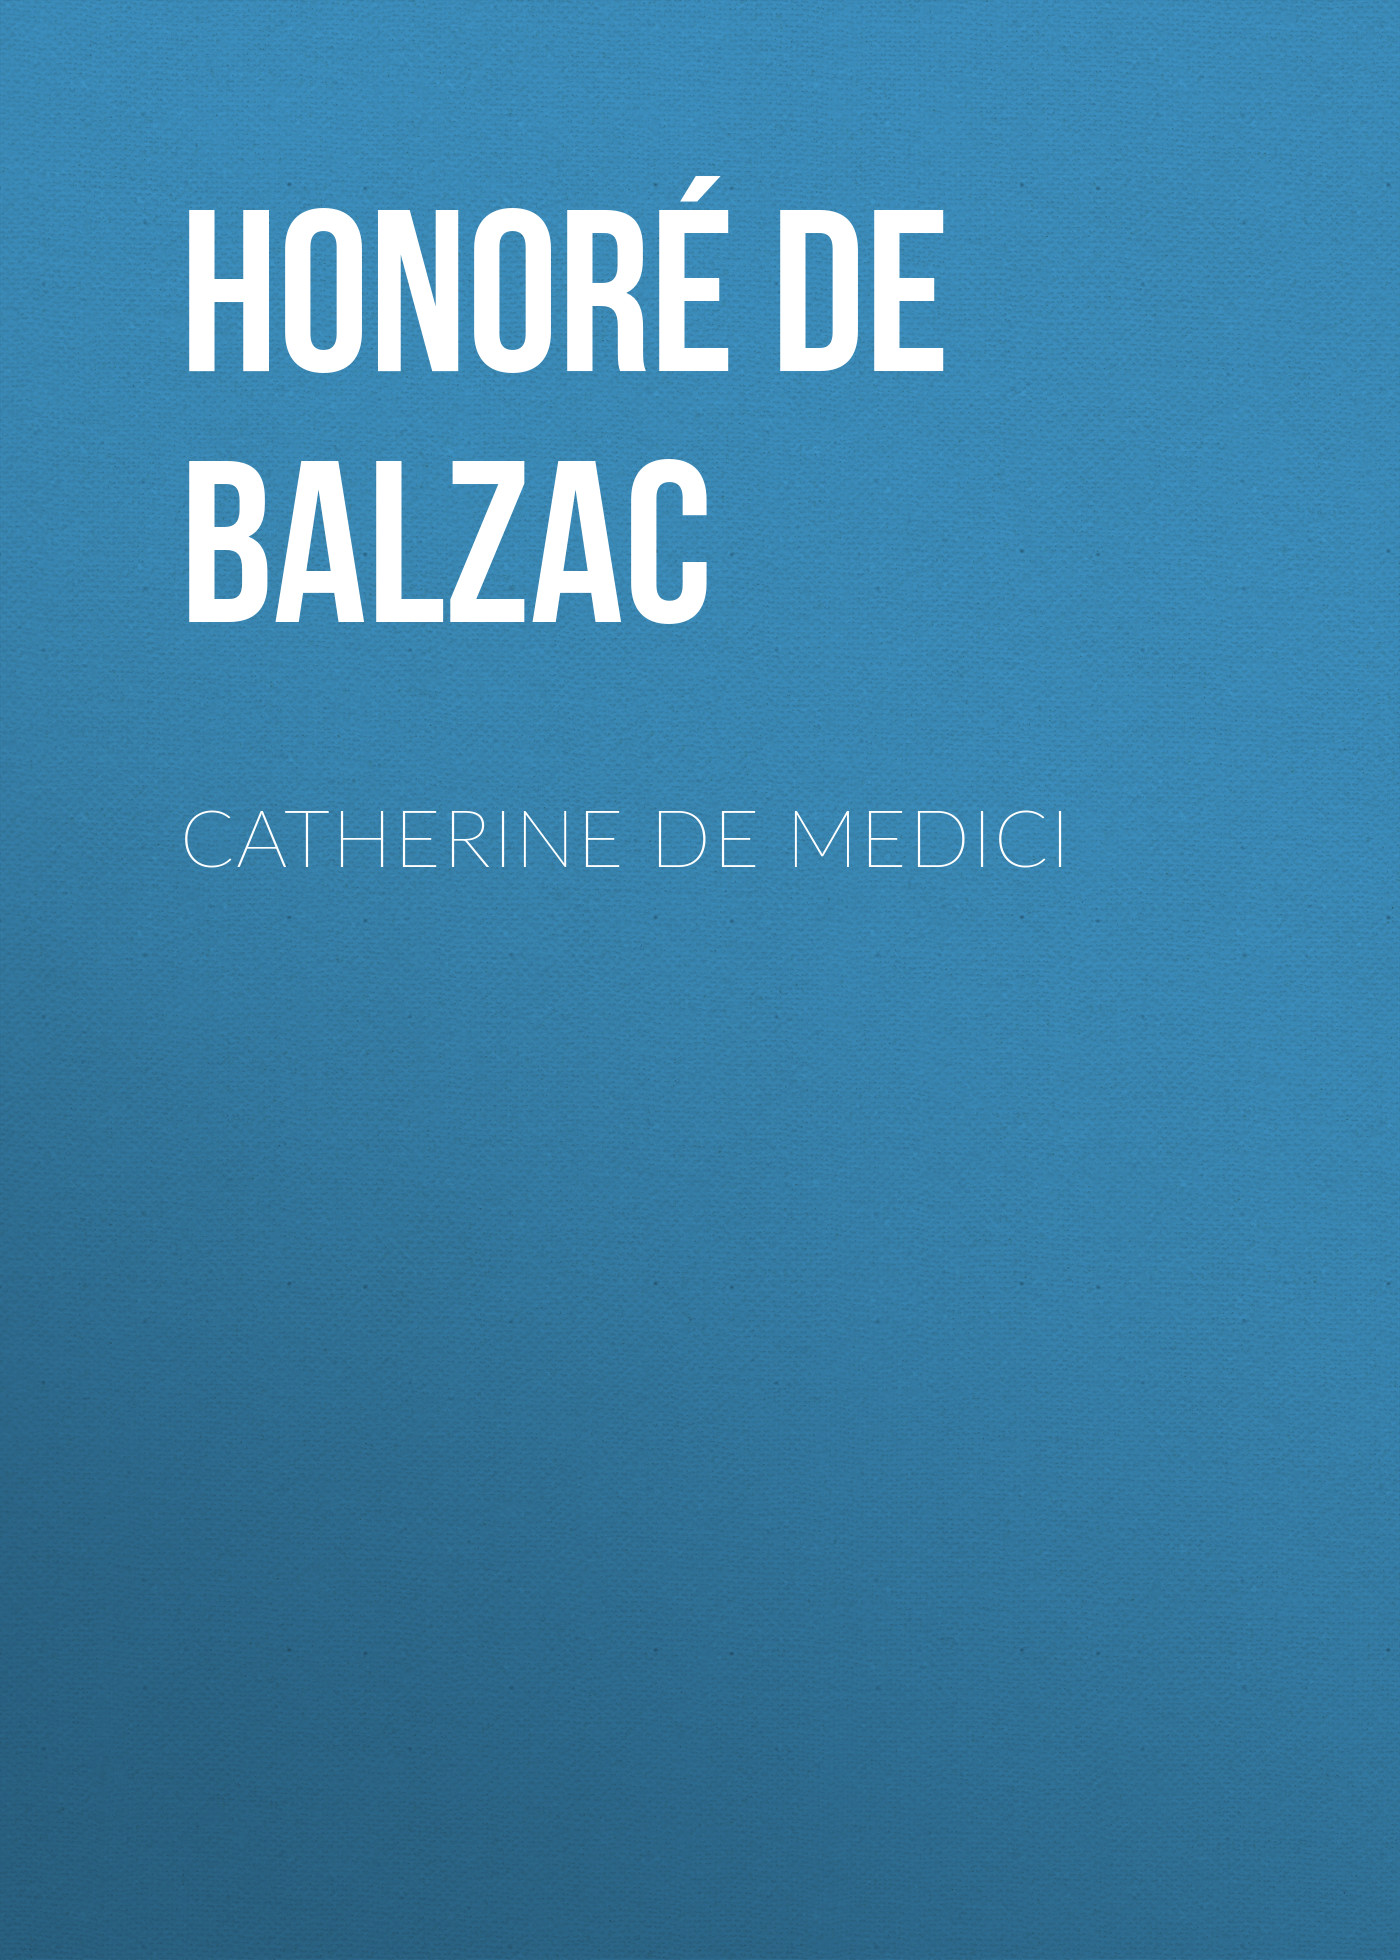 Книга Catherine De Medici из серии , созданная Honoré Balzac, может относится к жанру Литература 19 века, Зарубежная старинная литература, Зарубежная классика. Стоимость электронной книги Catherine De Medici с идентификатором 25020339 составляет 0 руб.